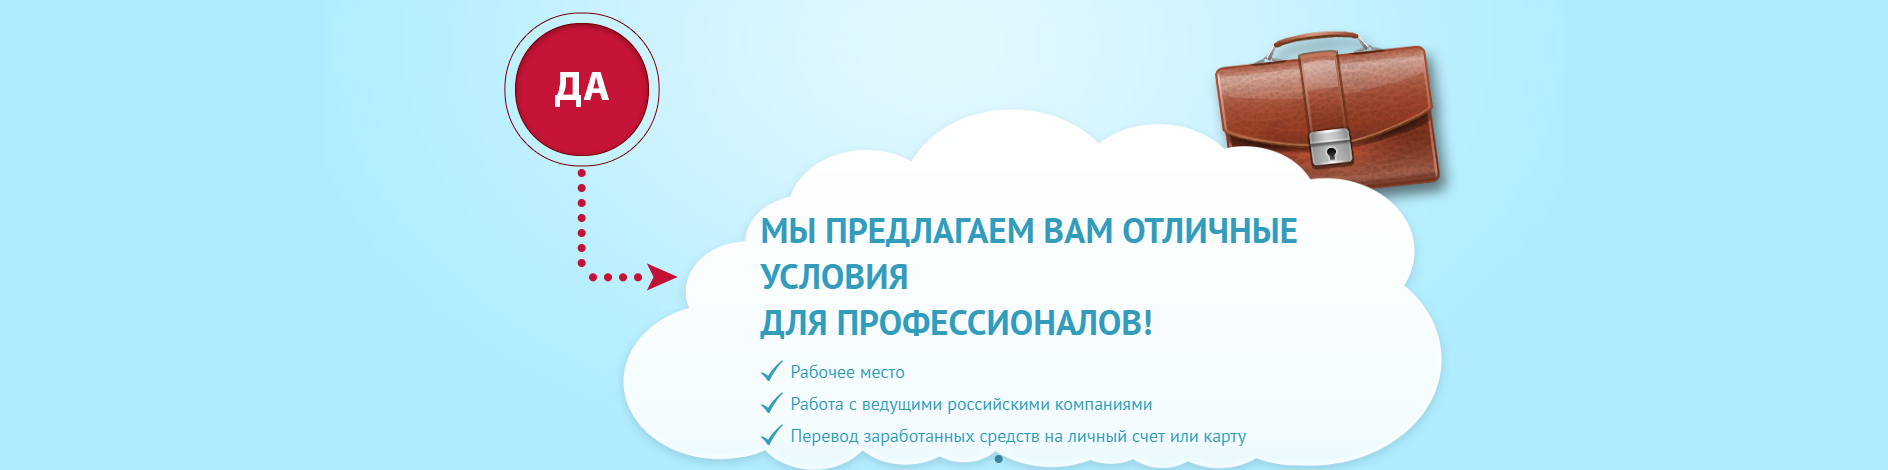 Список вакансии от Россиийских компаний - отправить резюме онлайн